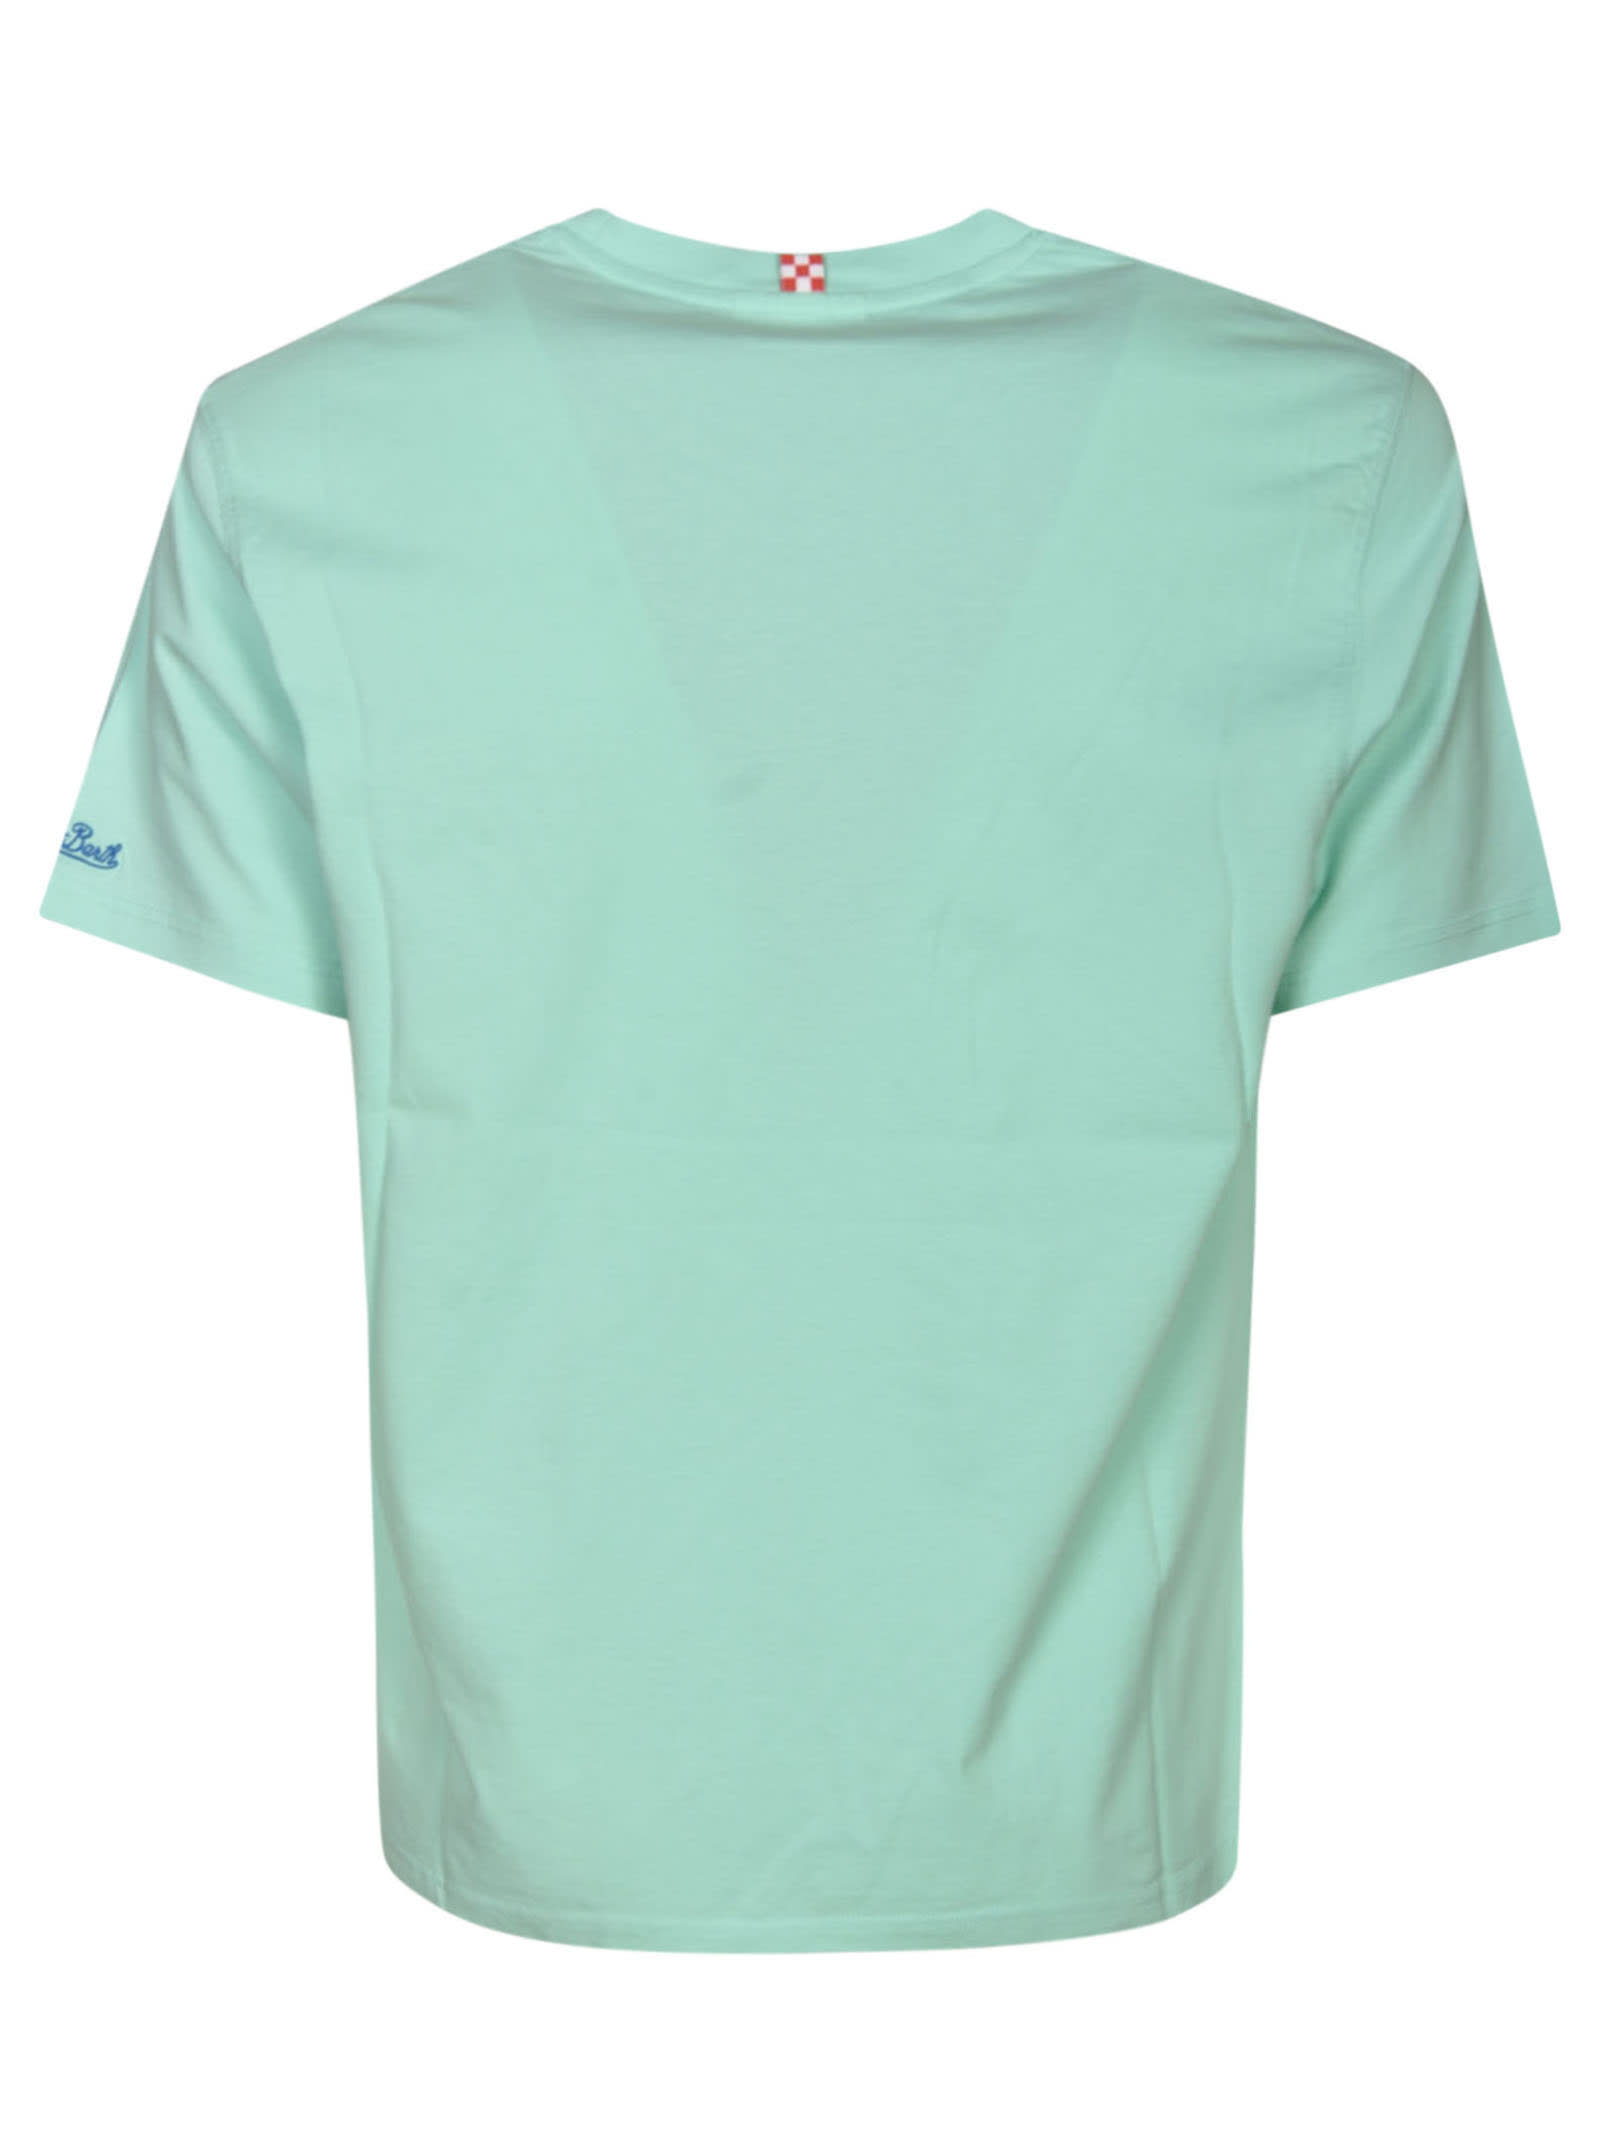 Portofino T-shirt